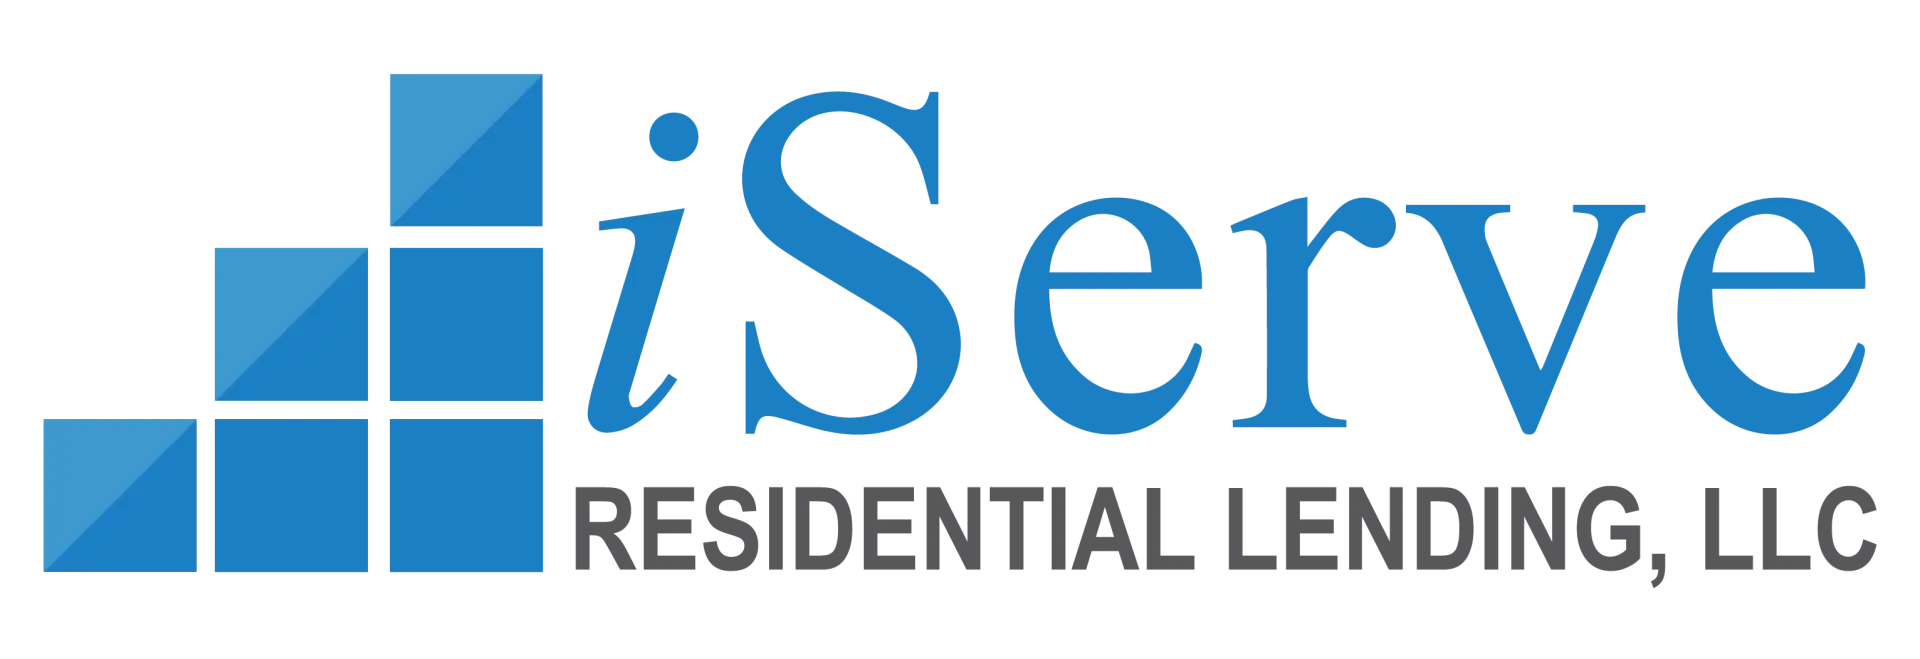 iServe Residential Lending LLC